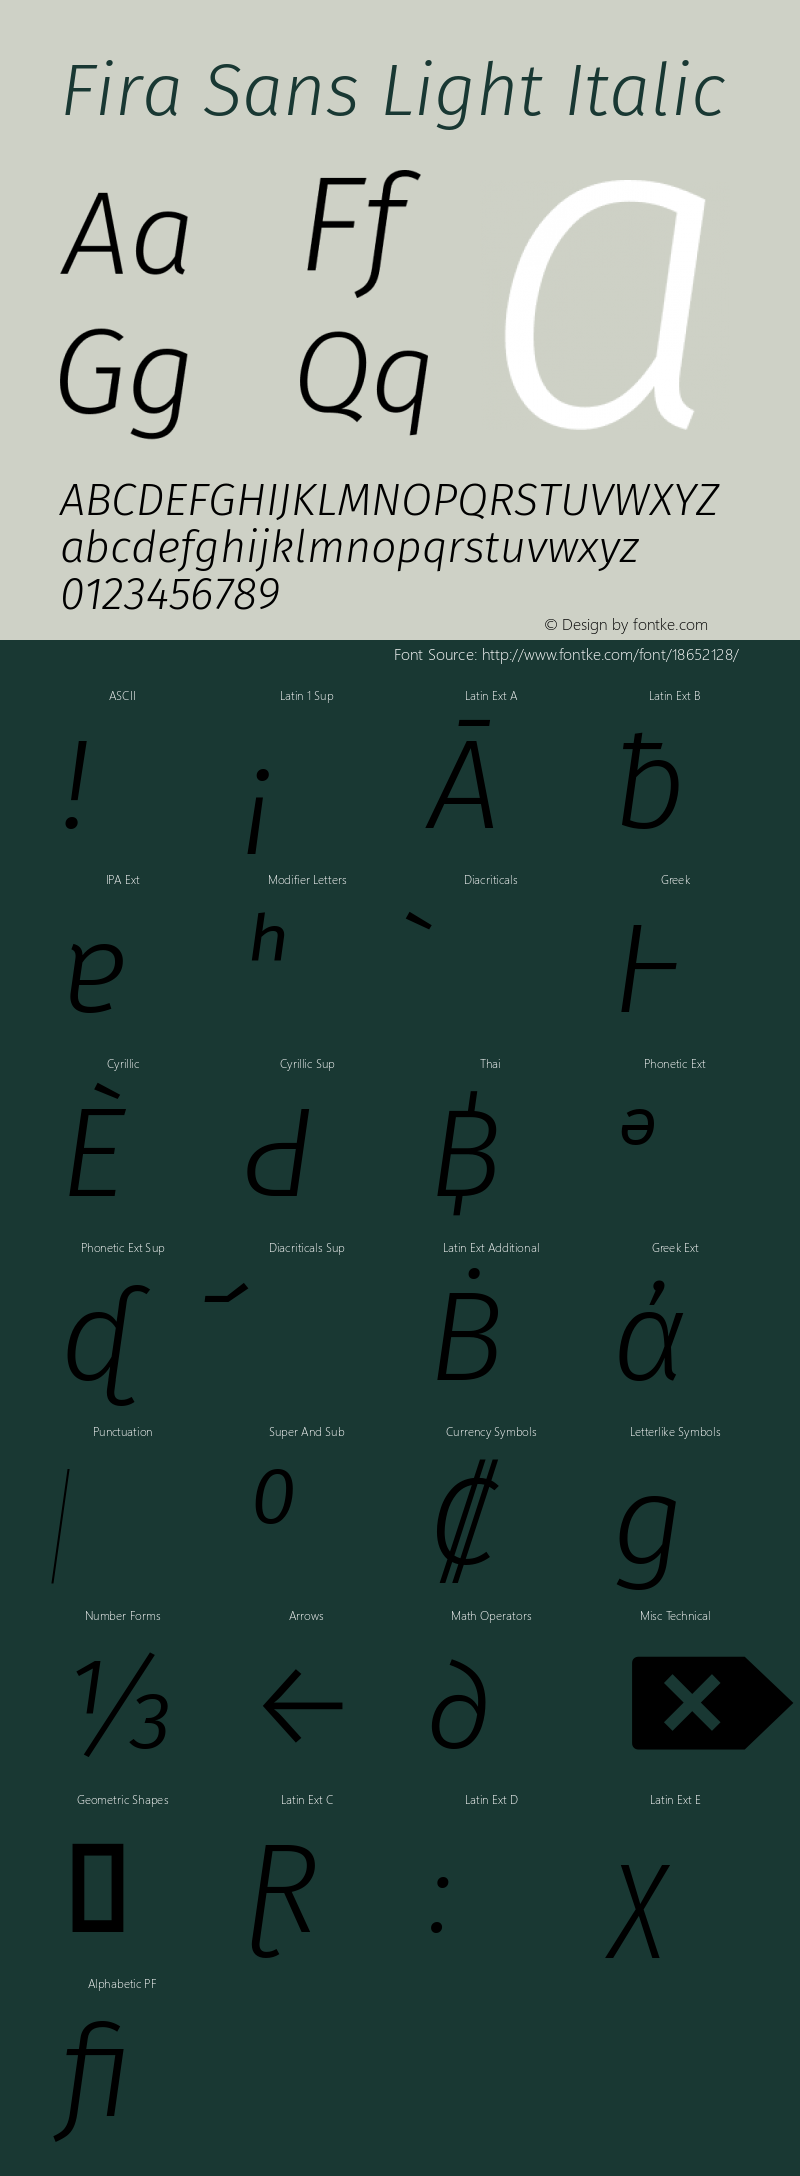 Fira Sans Light Italic Version 4.203图片样张